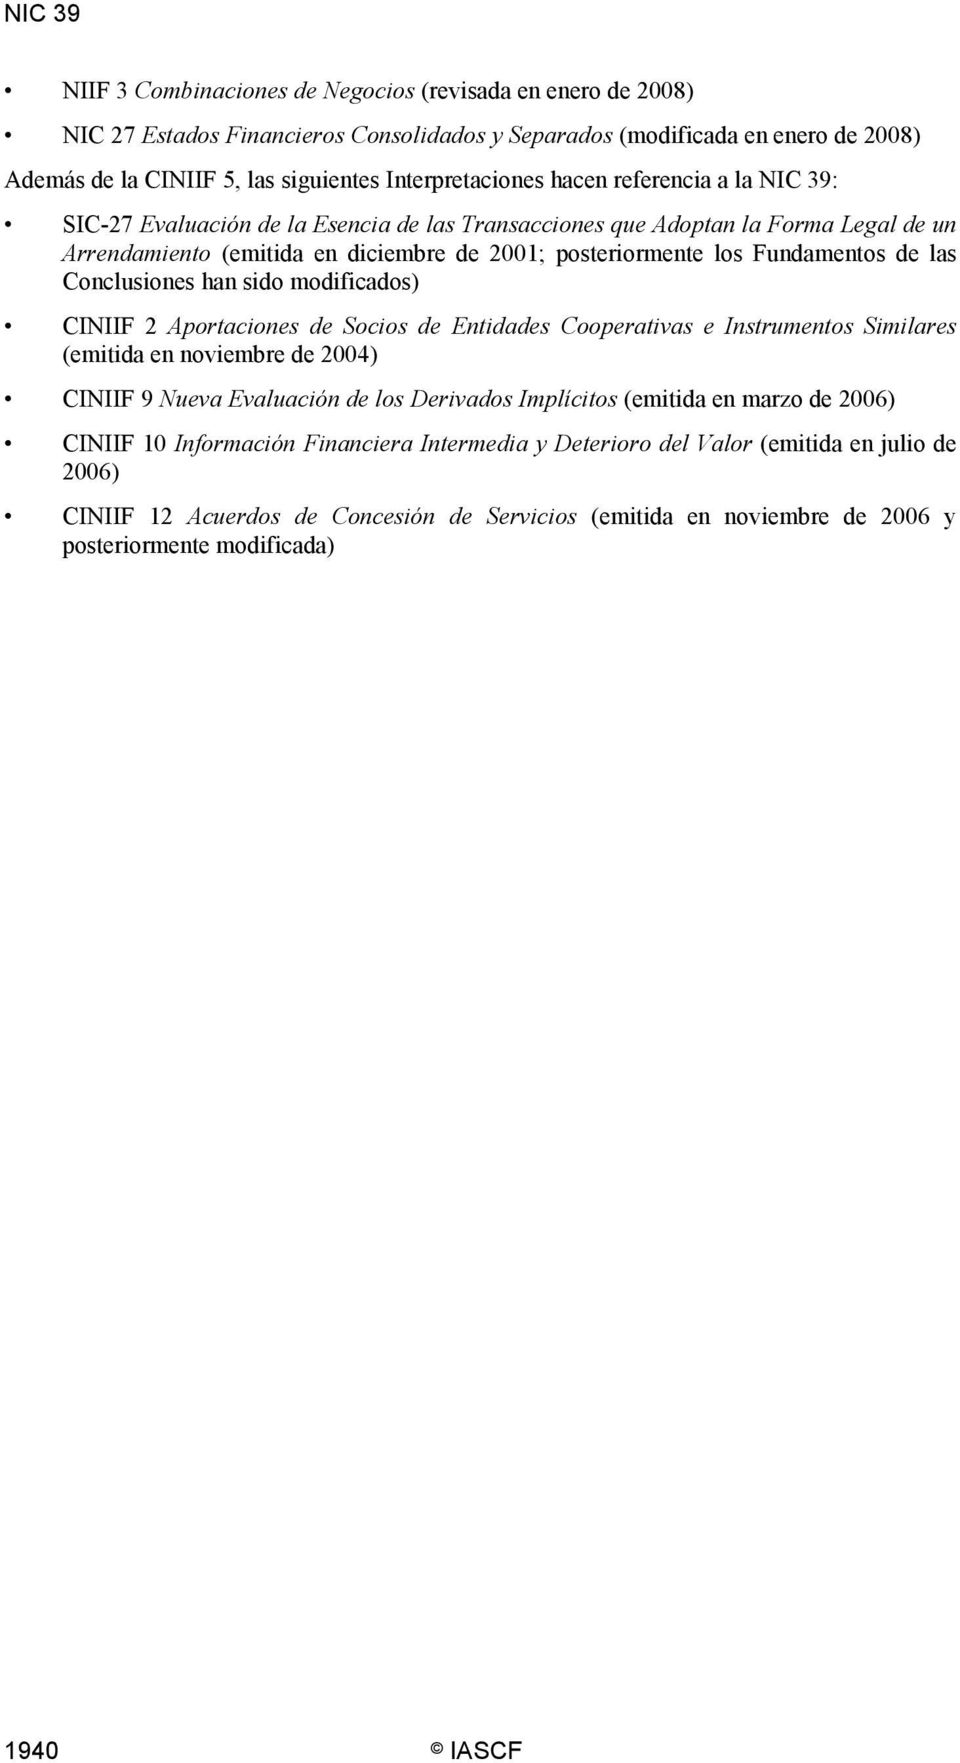 Fundamentos de las Conclusiones han sido modificados) CINIIF 2 Aportaciones de Socios de Entidades Cooperativas e Instrumentos Similares (emitida en noviembre de 2004) CINIIF 9 Nueva Evaluación de